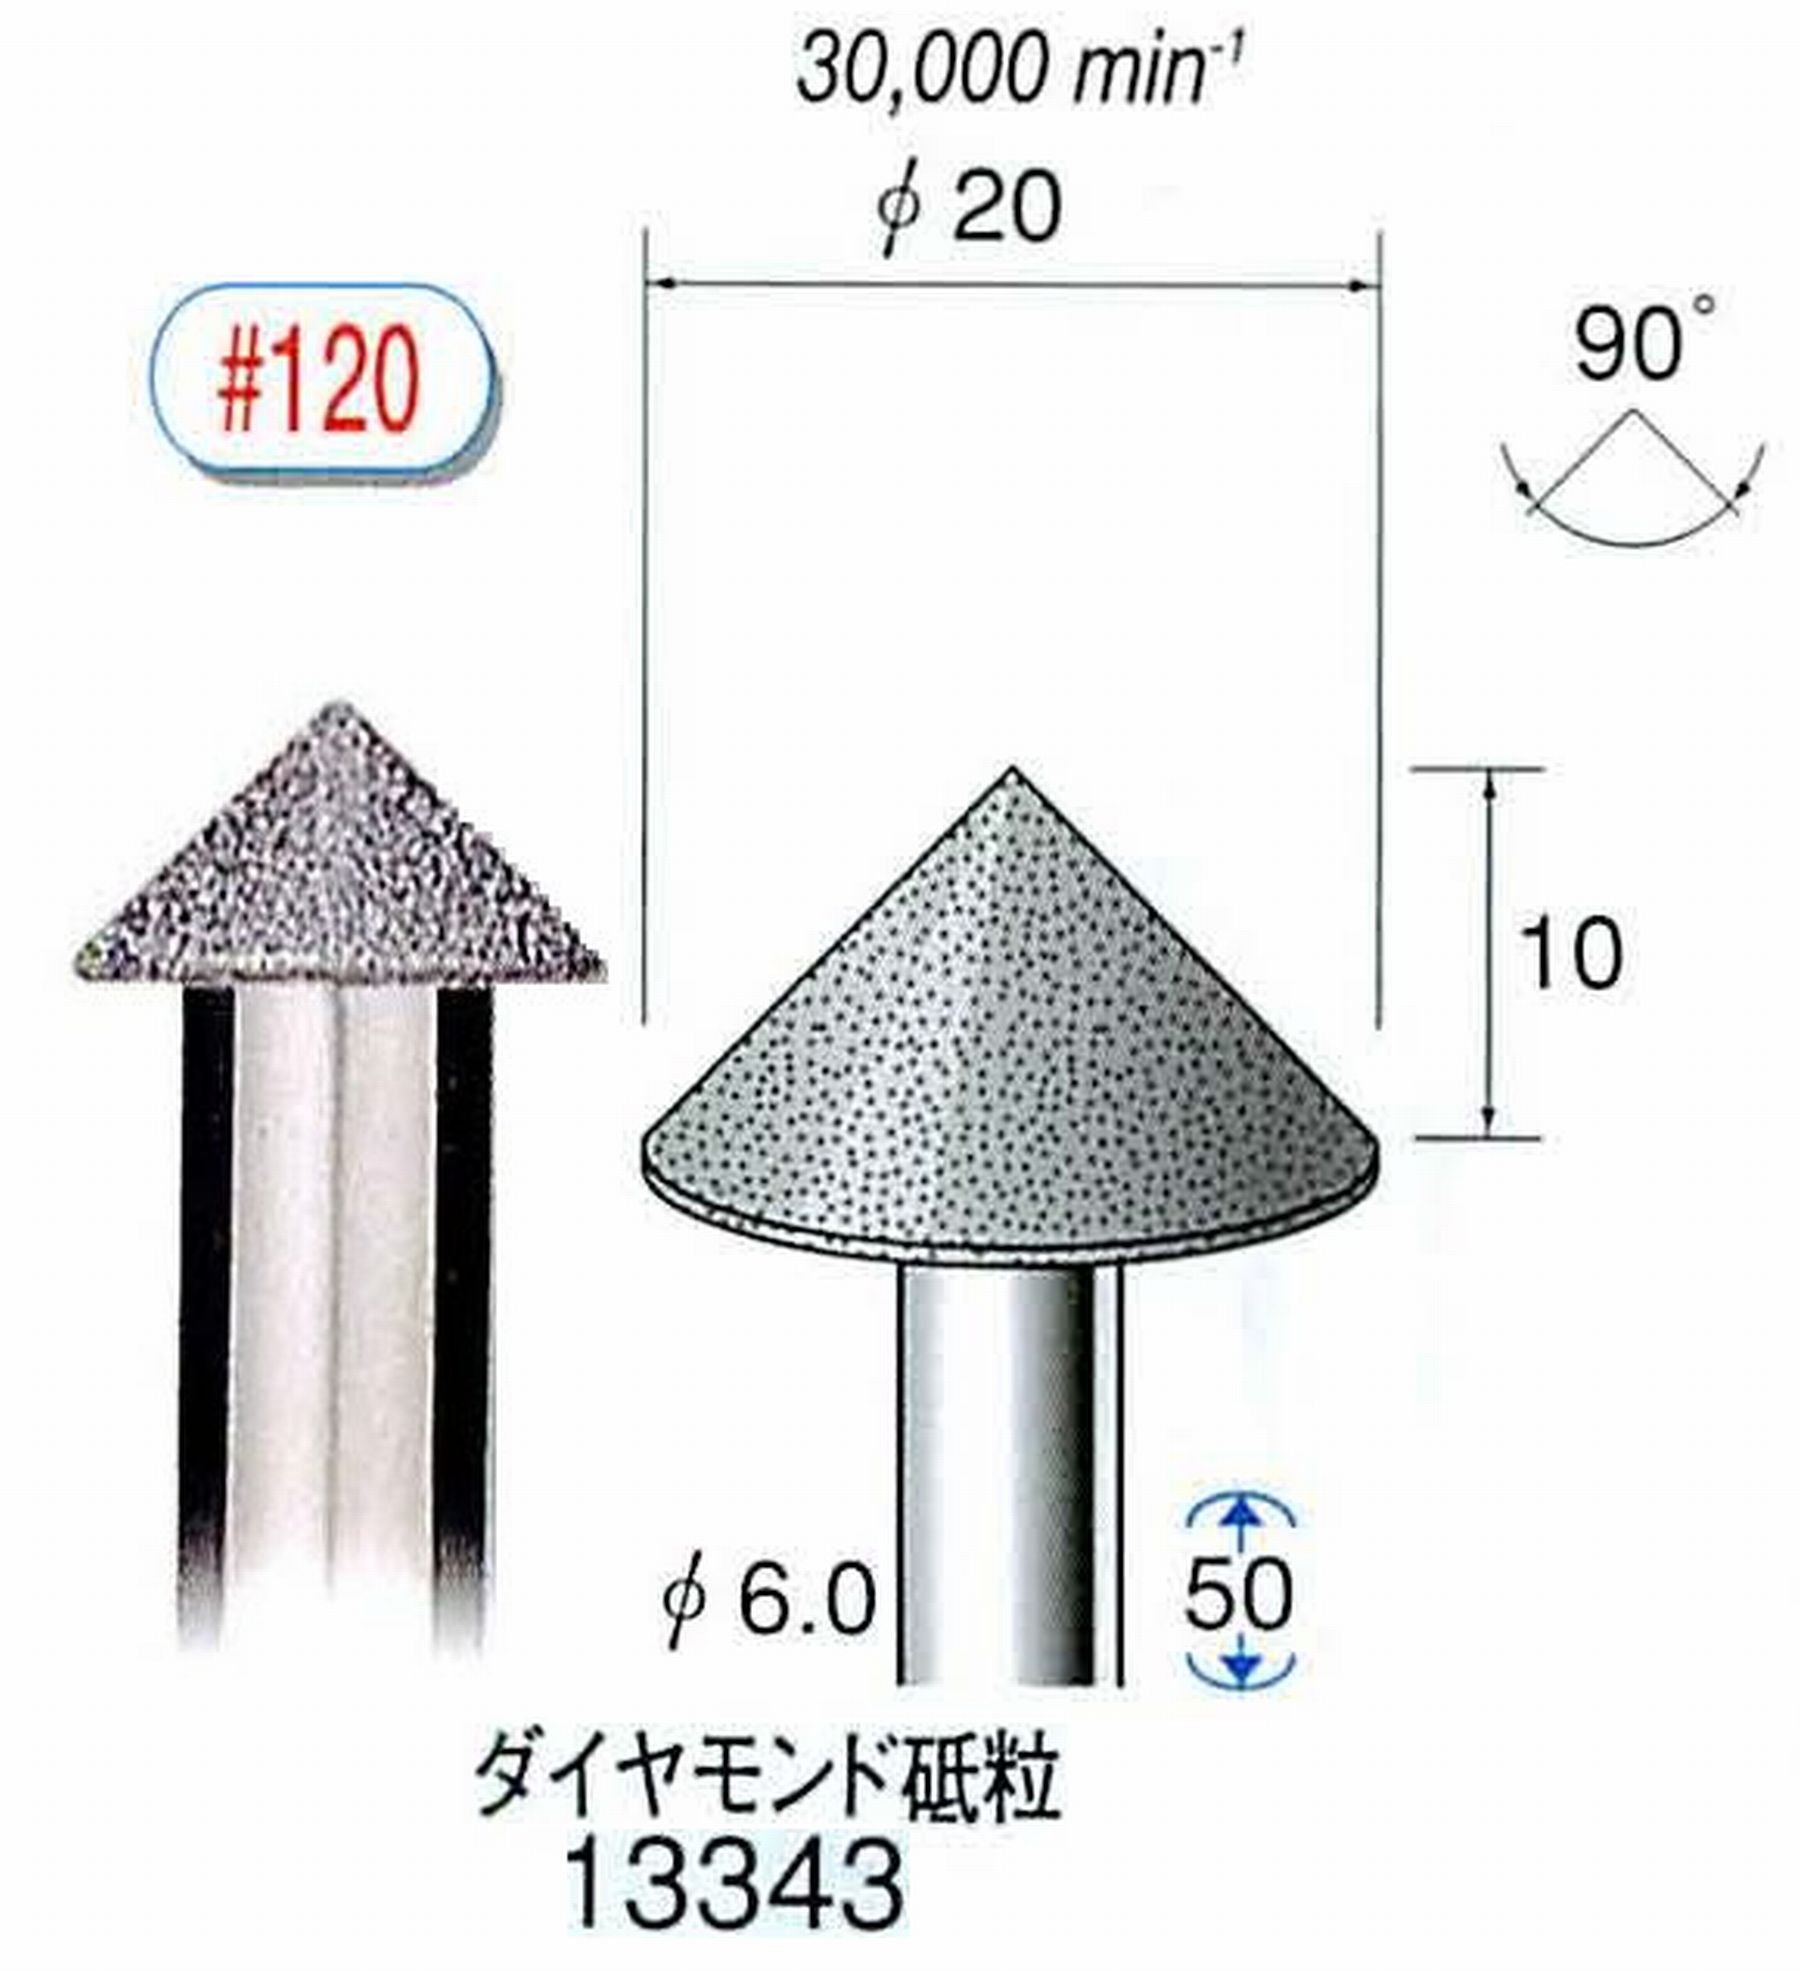 ナカニシ/NAKANISHI 電着ダイヤモンド ダイヤモンド砥粒 軸径(シャンク)φ6.0mm 13343